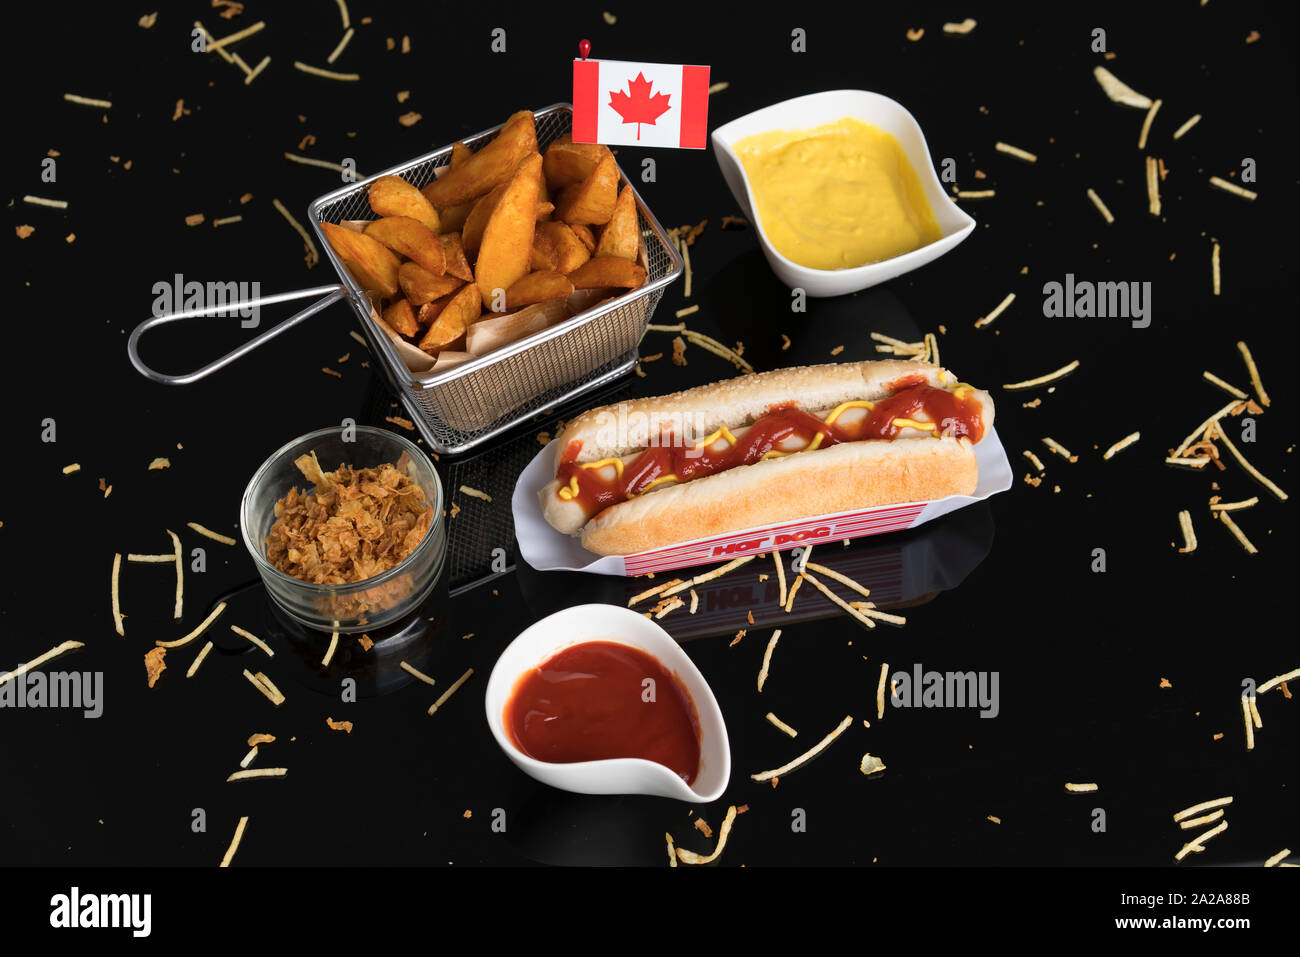 Hot Dog con condimentos, salsas y patatas visto desde arriba con la bandera Canadiense Foto de stock